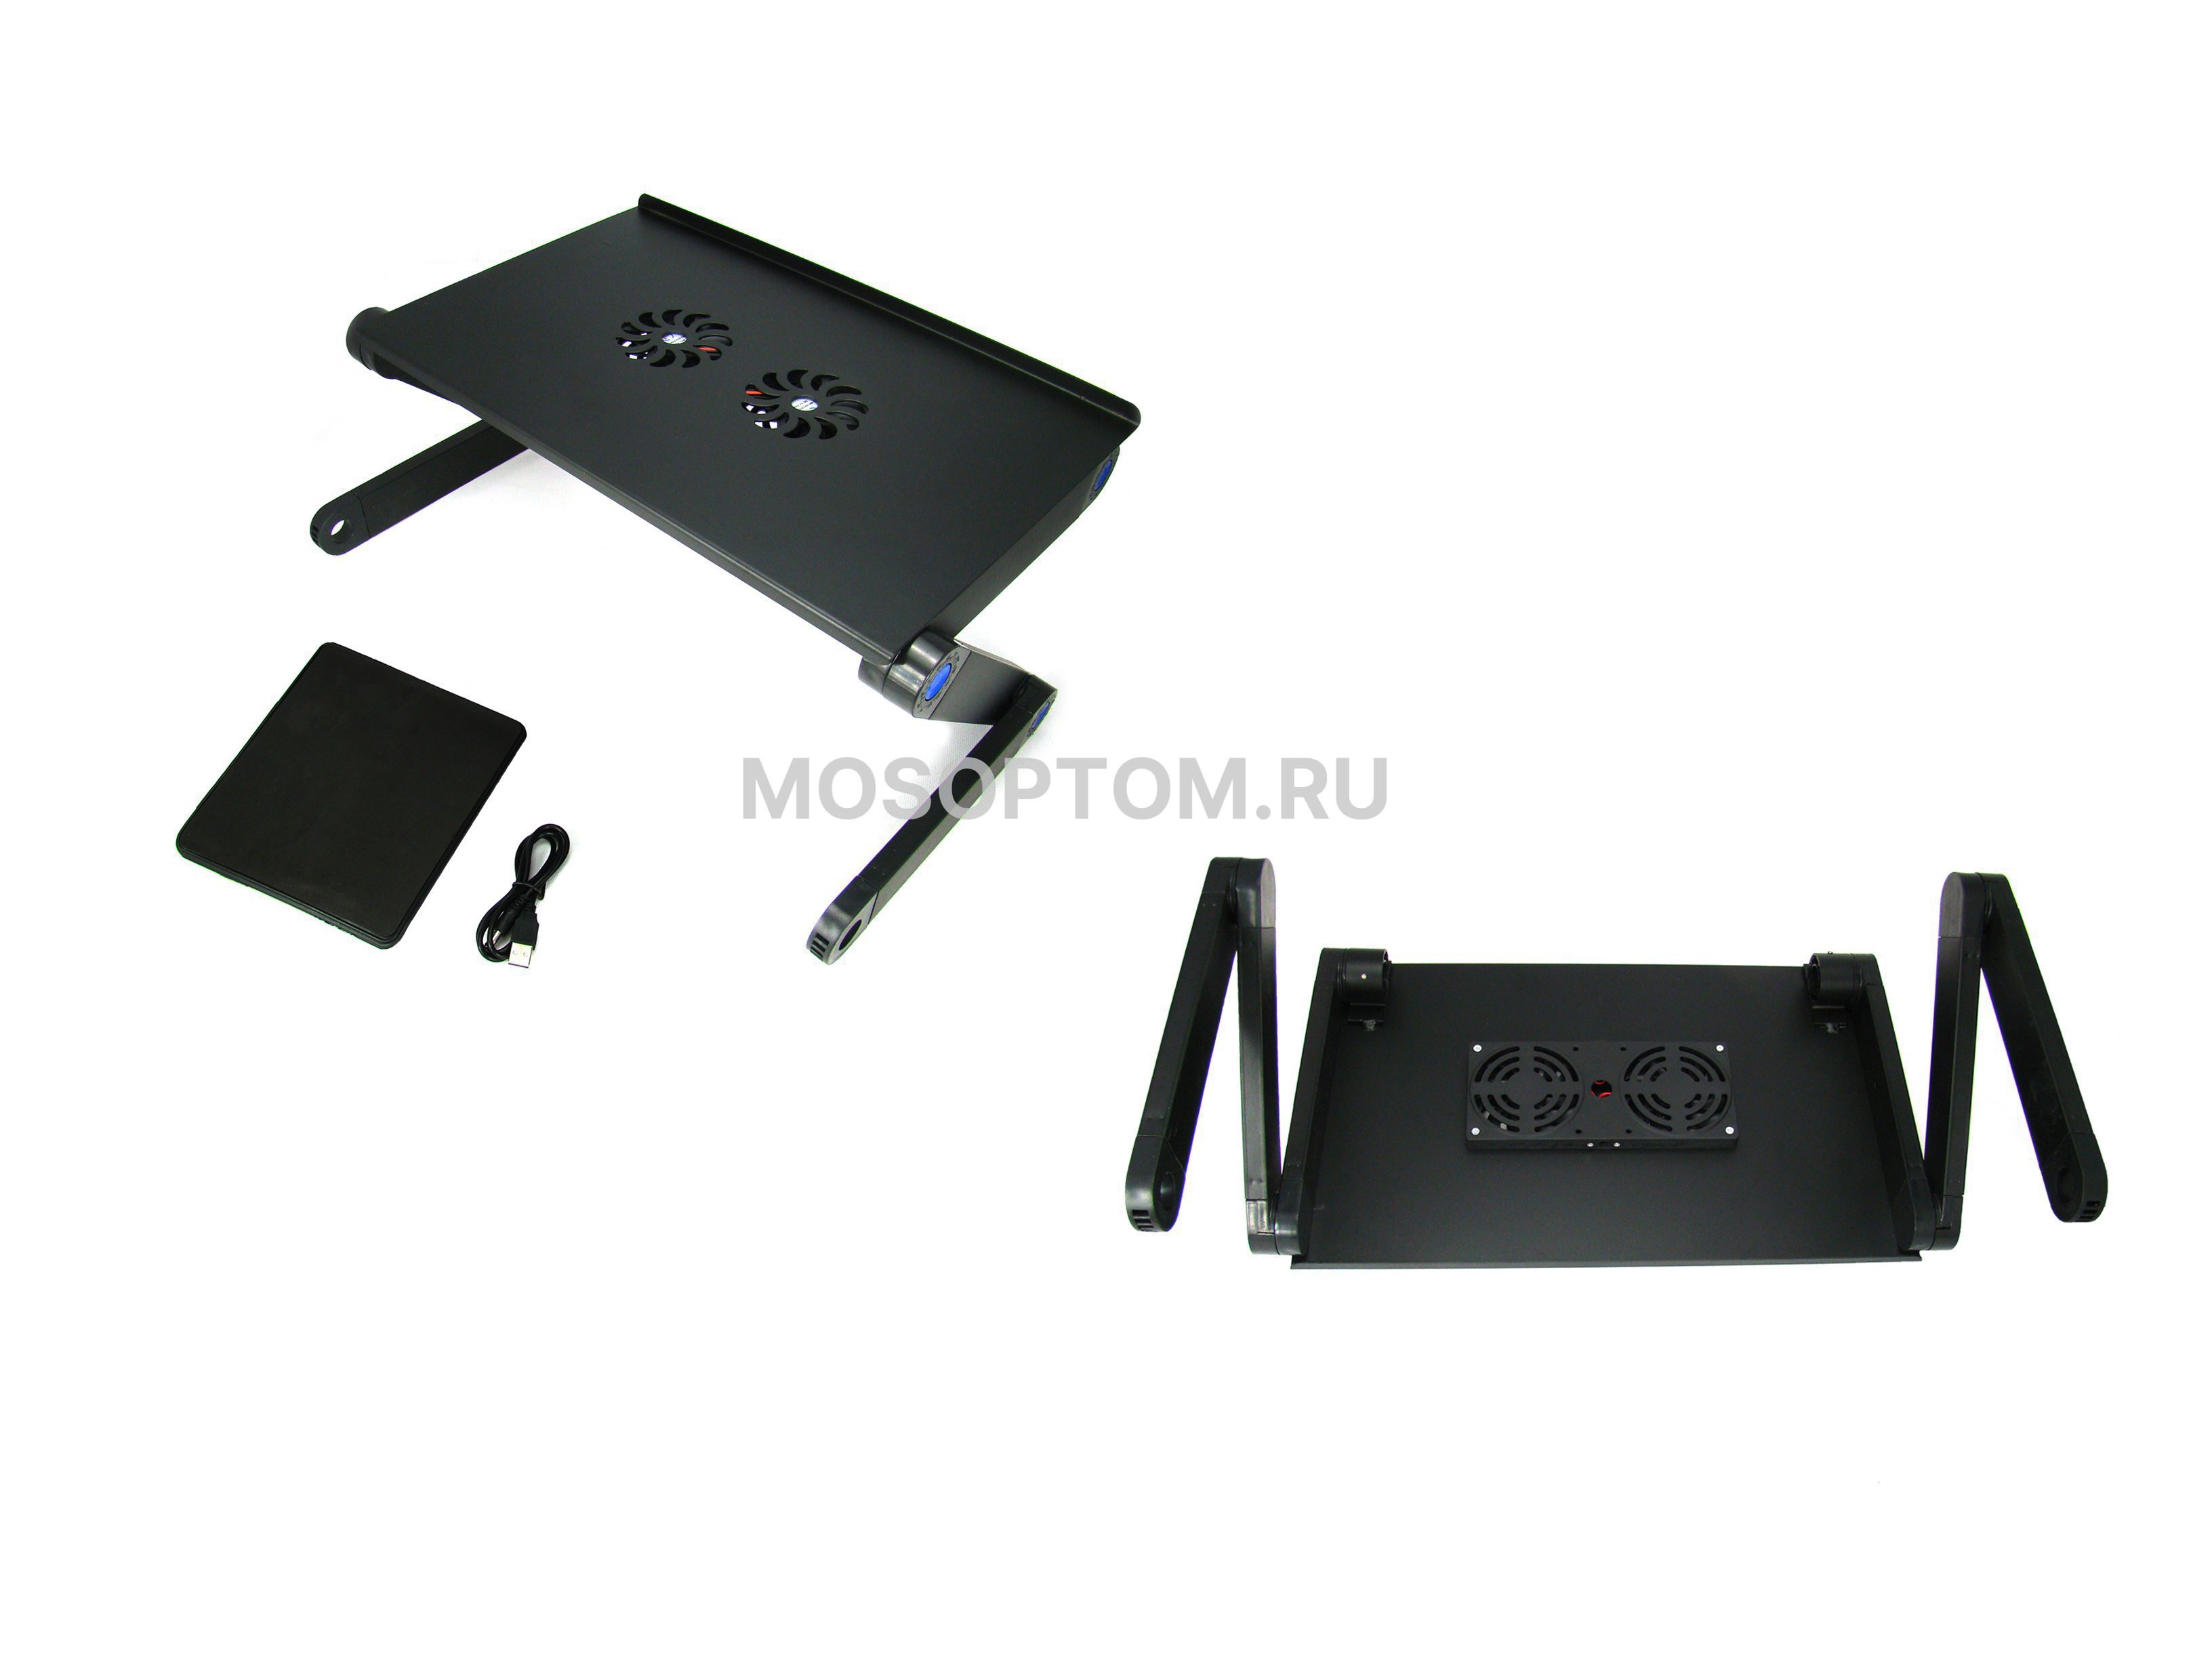 Столик трансформер для ноутбука  с вентилятором - T8 оптом - Фото №2